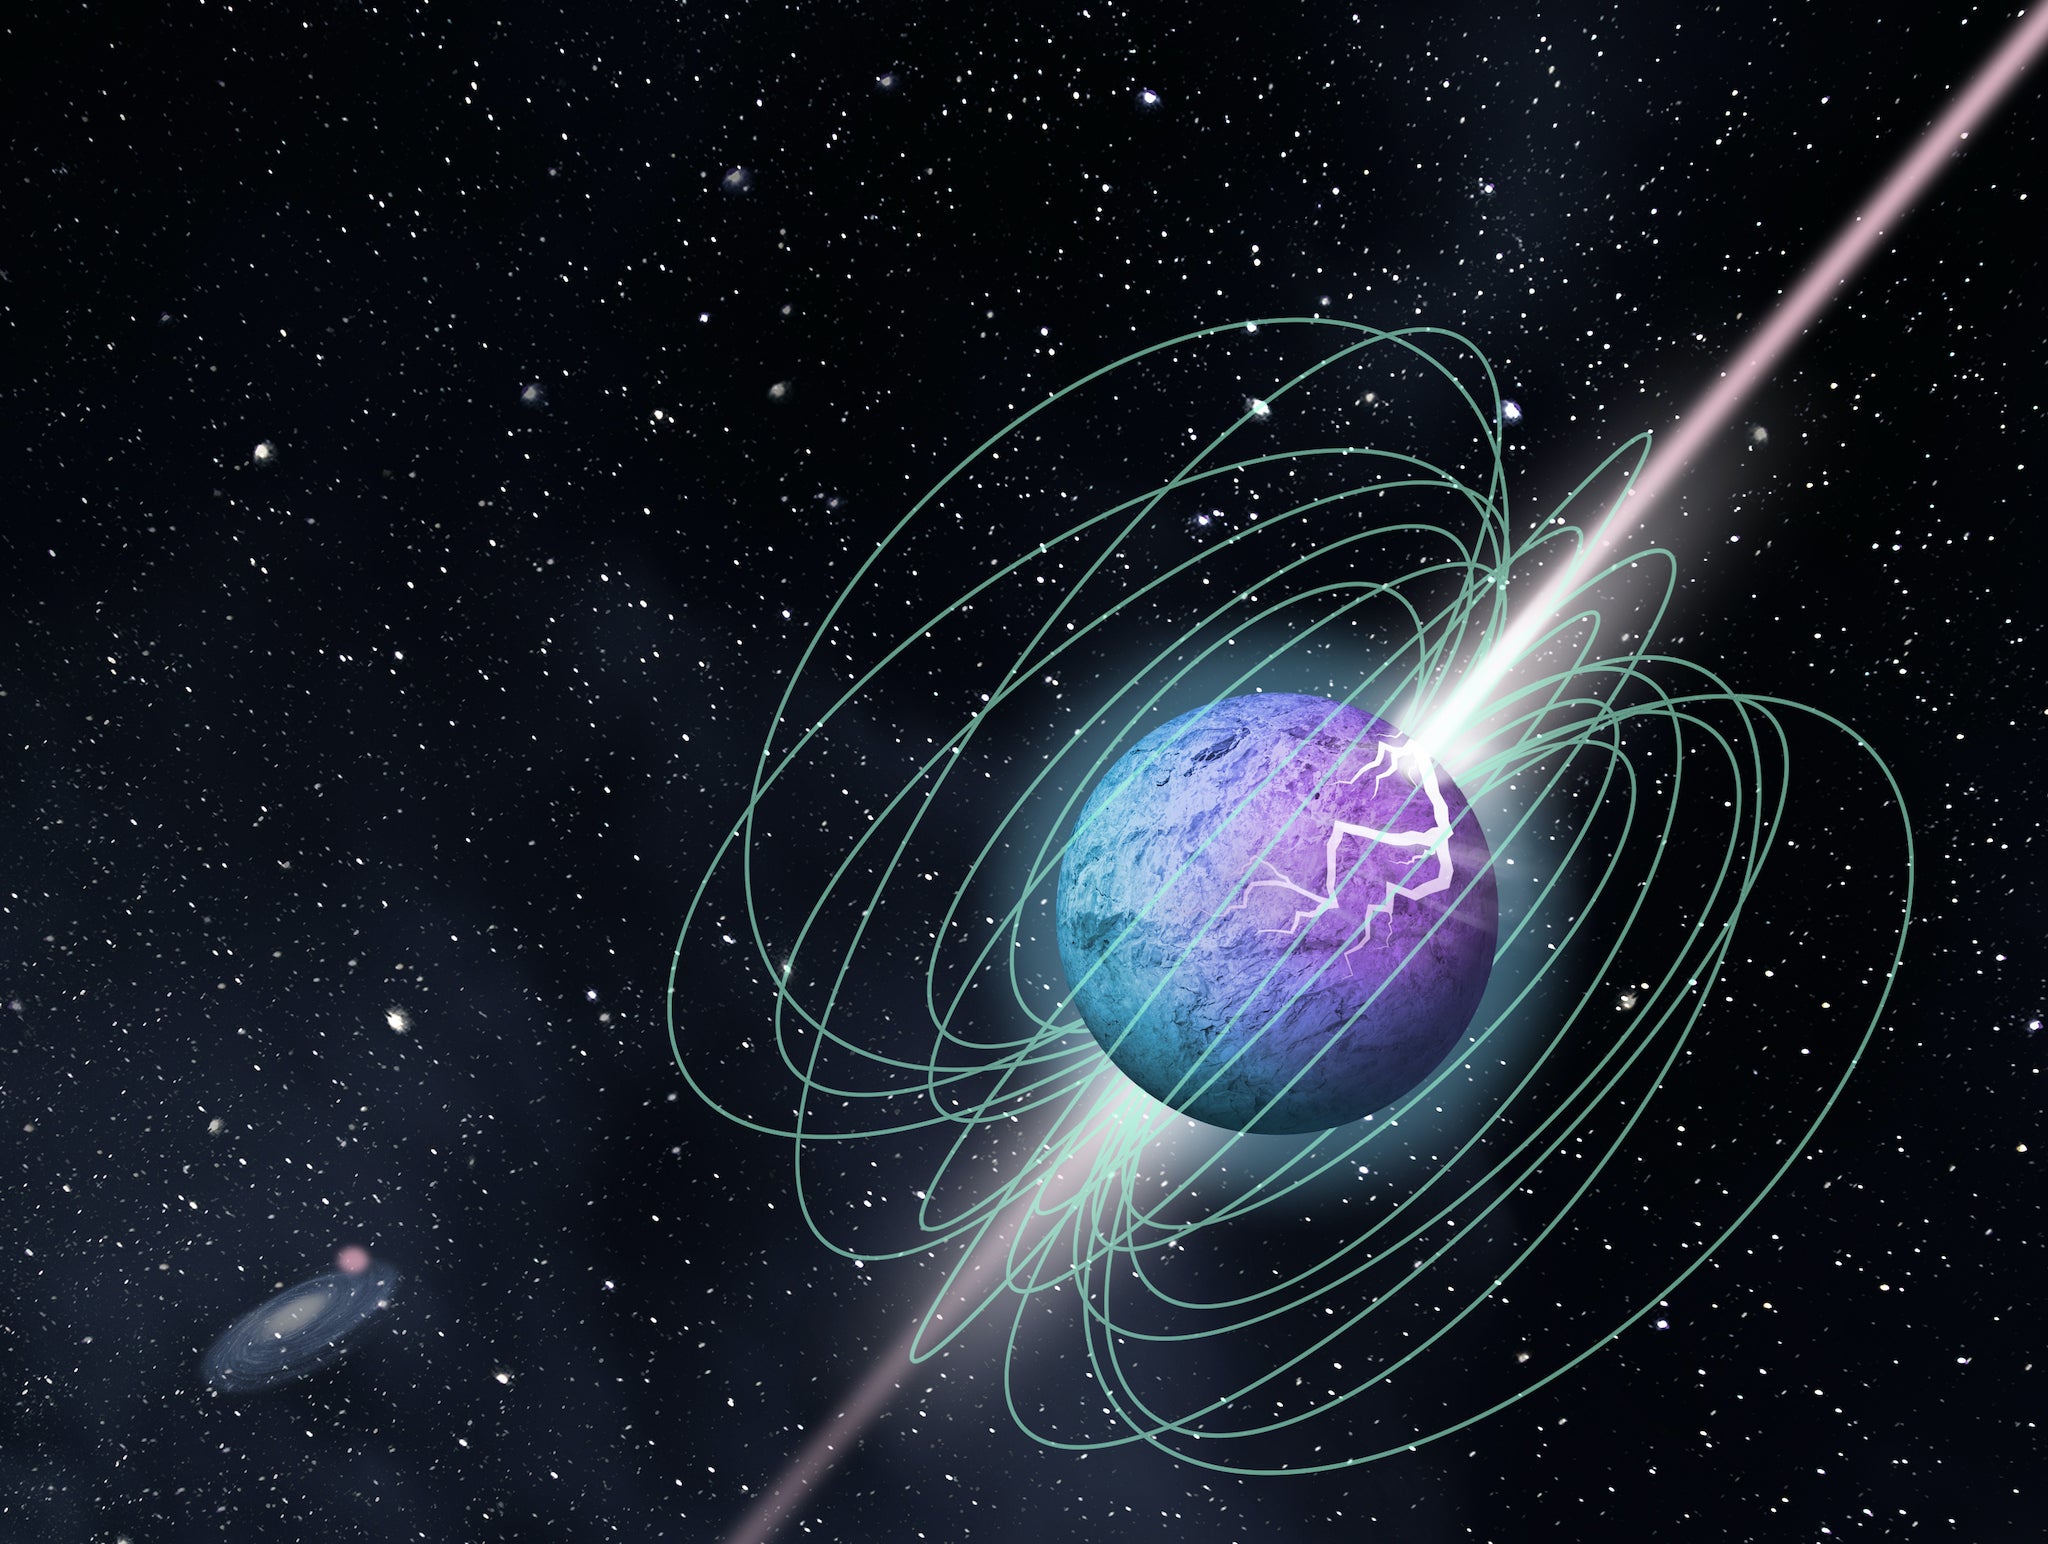 Las ráfagas de energía de radio parecen provenir de un magnetar, o una estrella con un campo magnético muy poderoso.